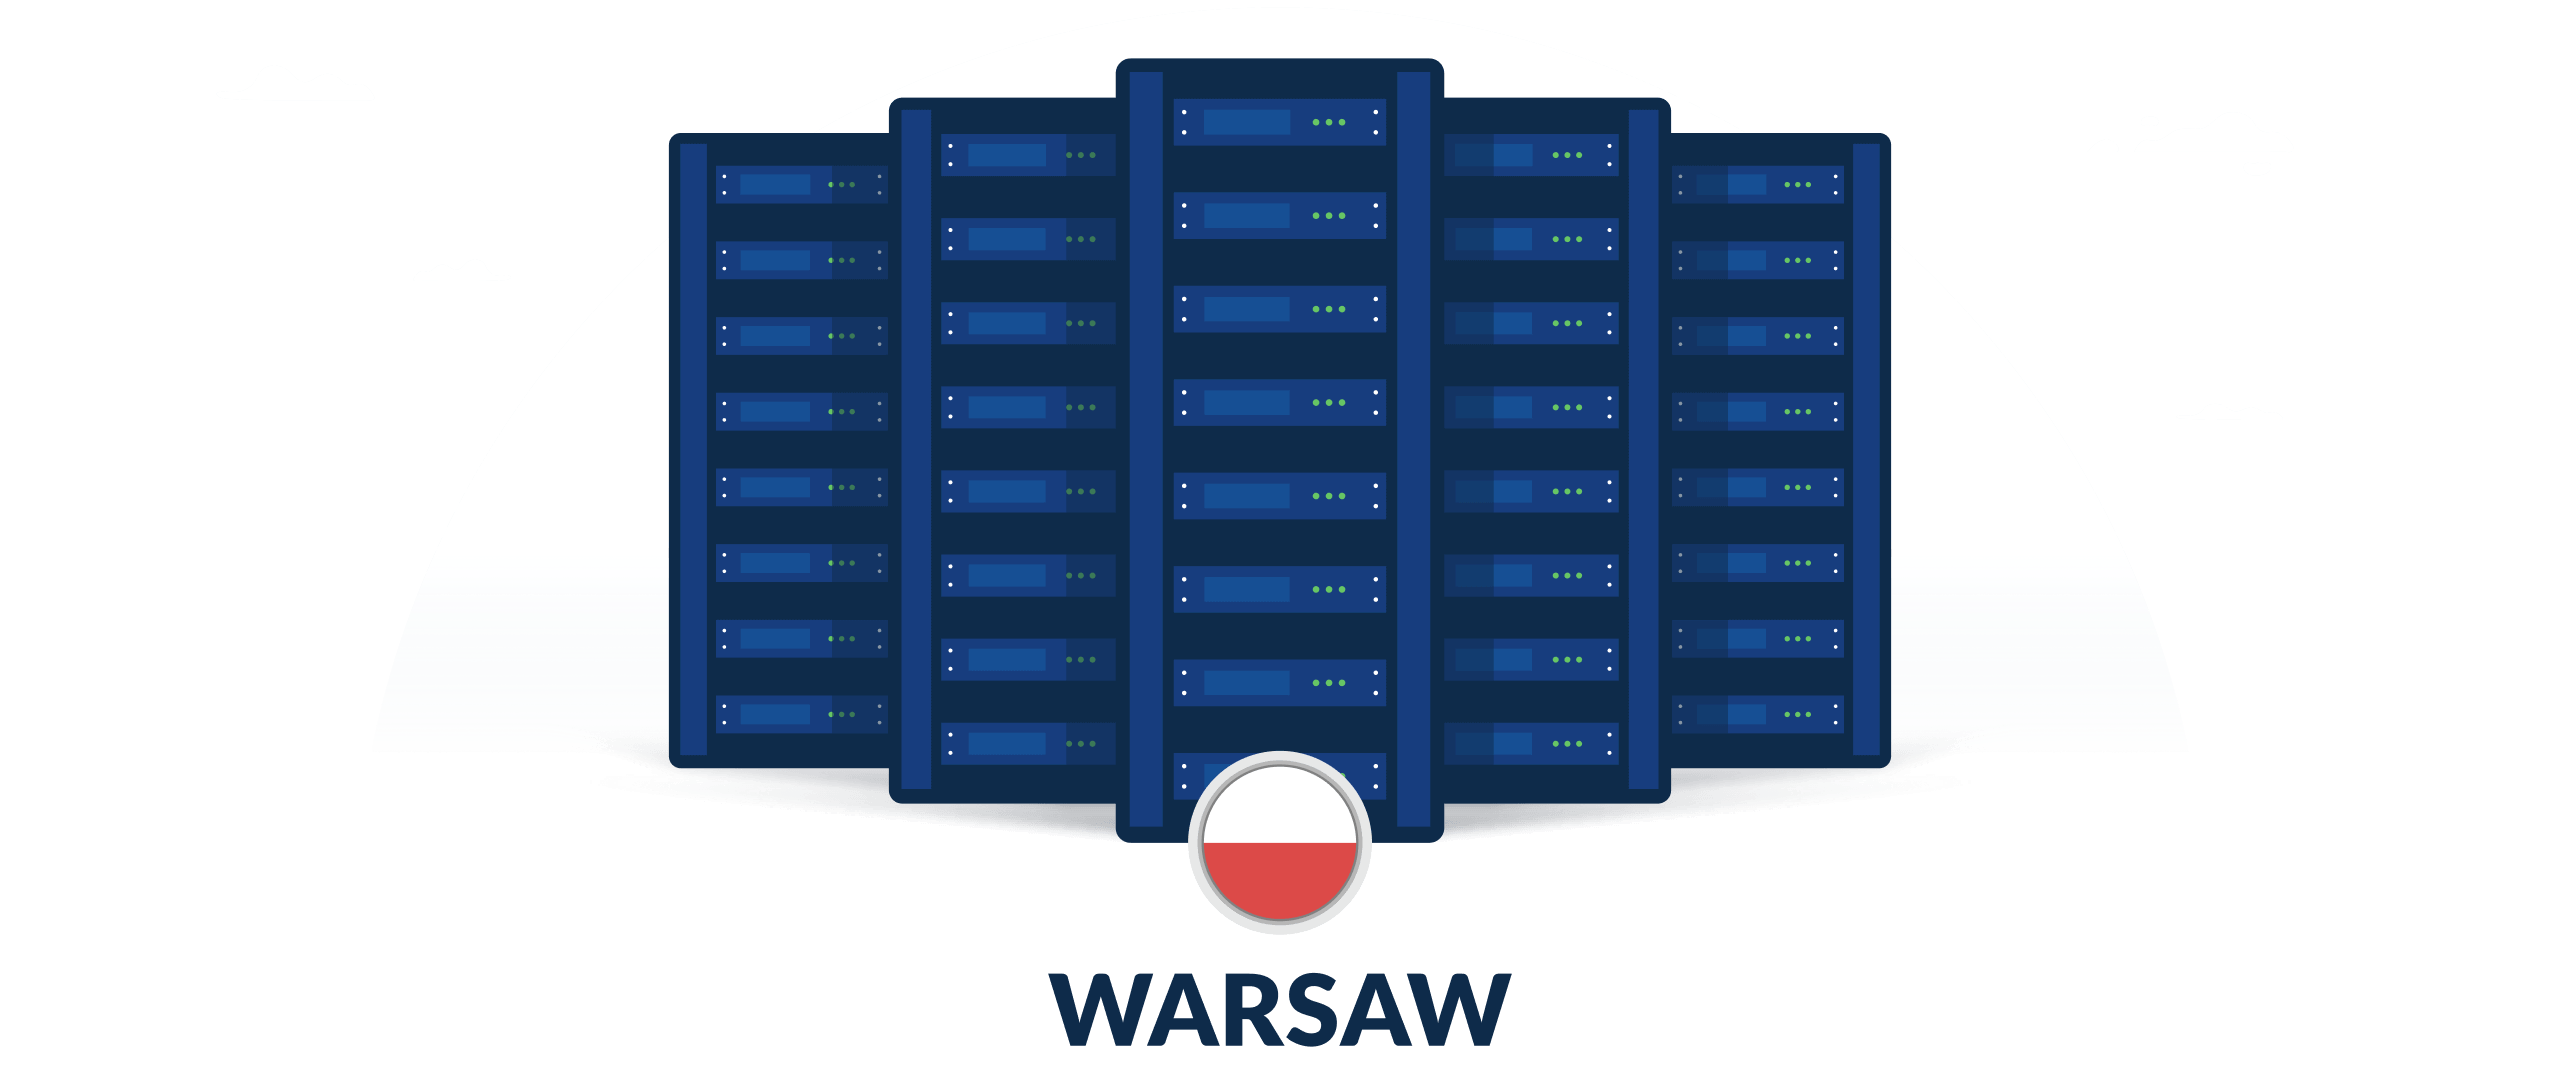 VPN servers in Warsaw, Poland